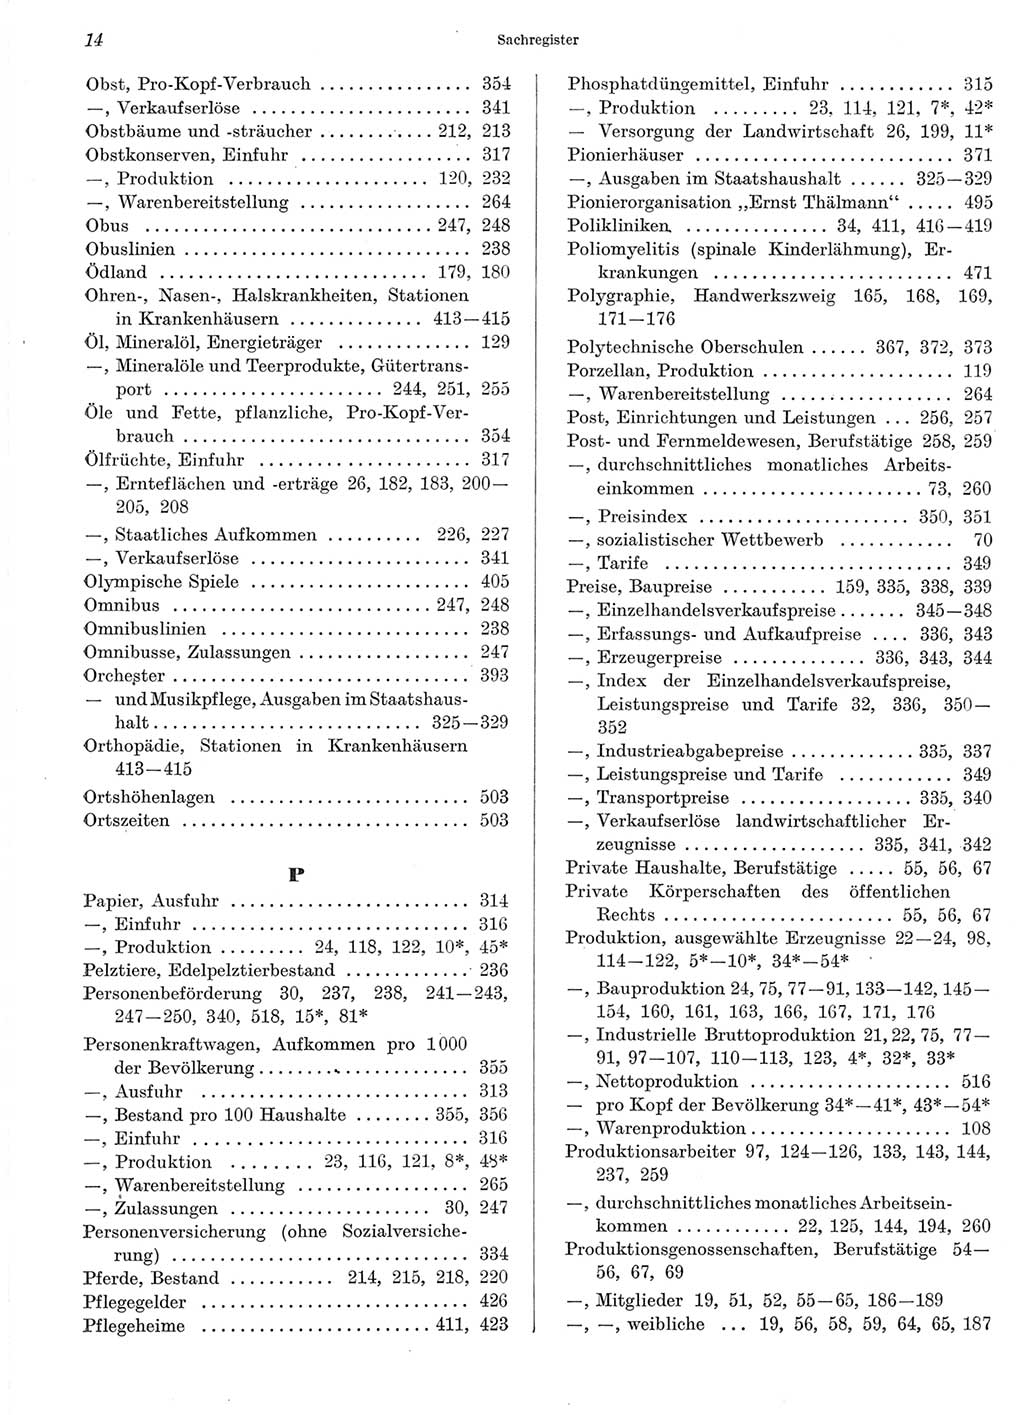 Statistisches Jahrbuch der Deutschen Demokratischen Republik (DDR) 1970, Seite 14 (Stat. Jb. DDR 1970, S. 14)